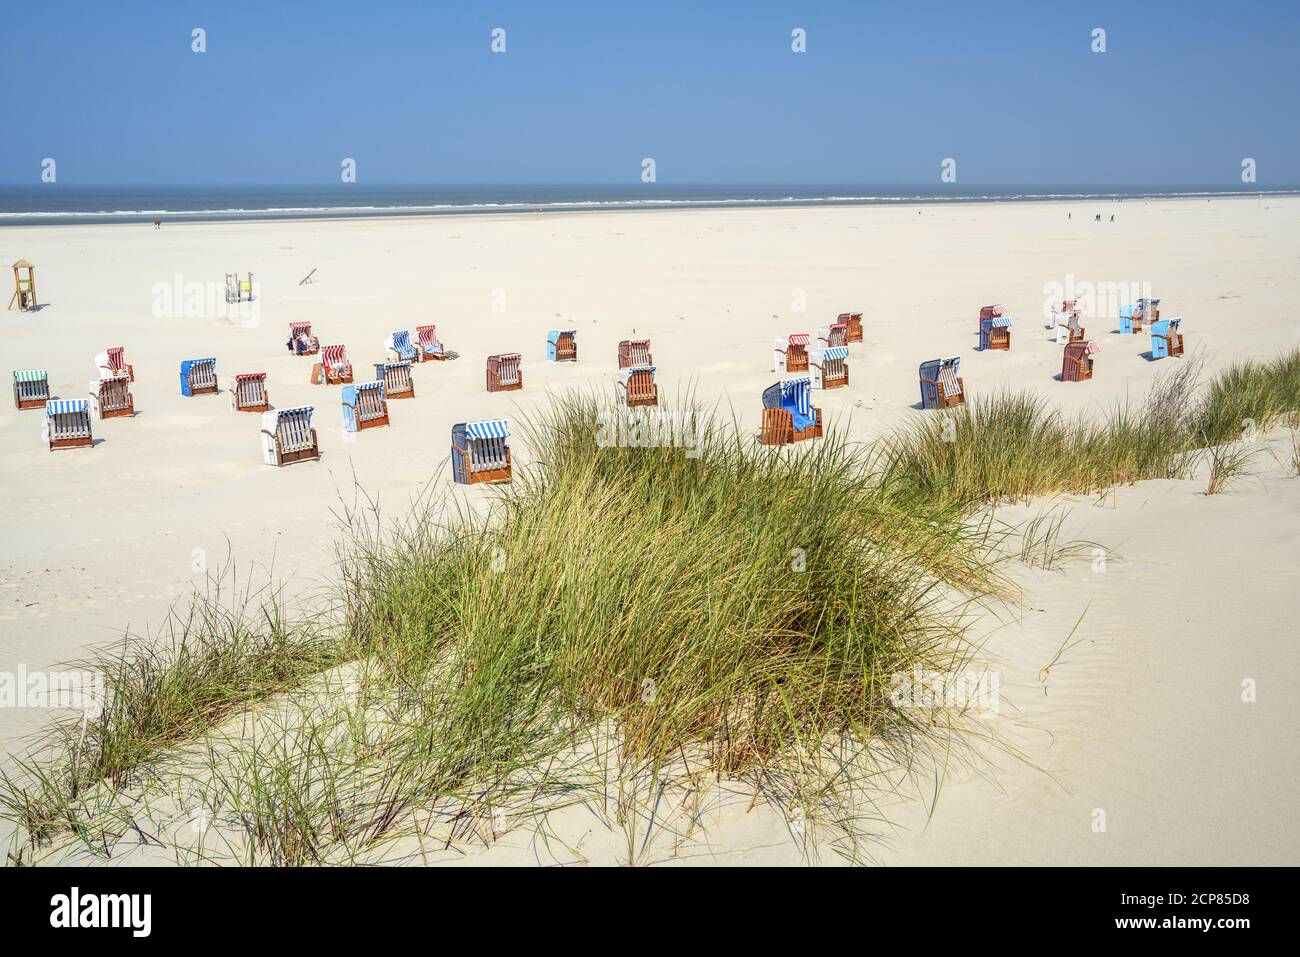 Spiaggia sull'isola Juist, Frisia orientale, Isole Frisone orientali, bassa Sassonia, Costa del Mare del Nord, Germania settentrionale, Germania, Europa Foto Stock